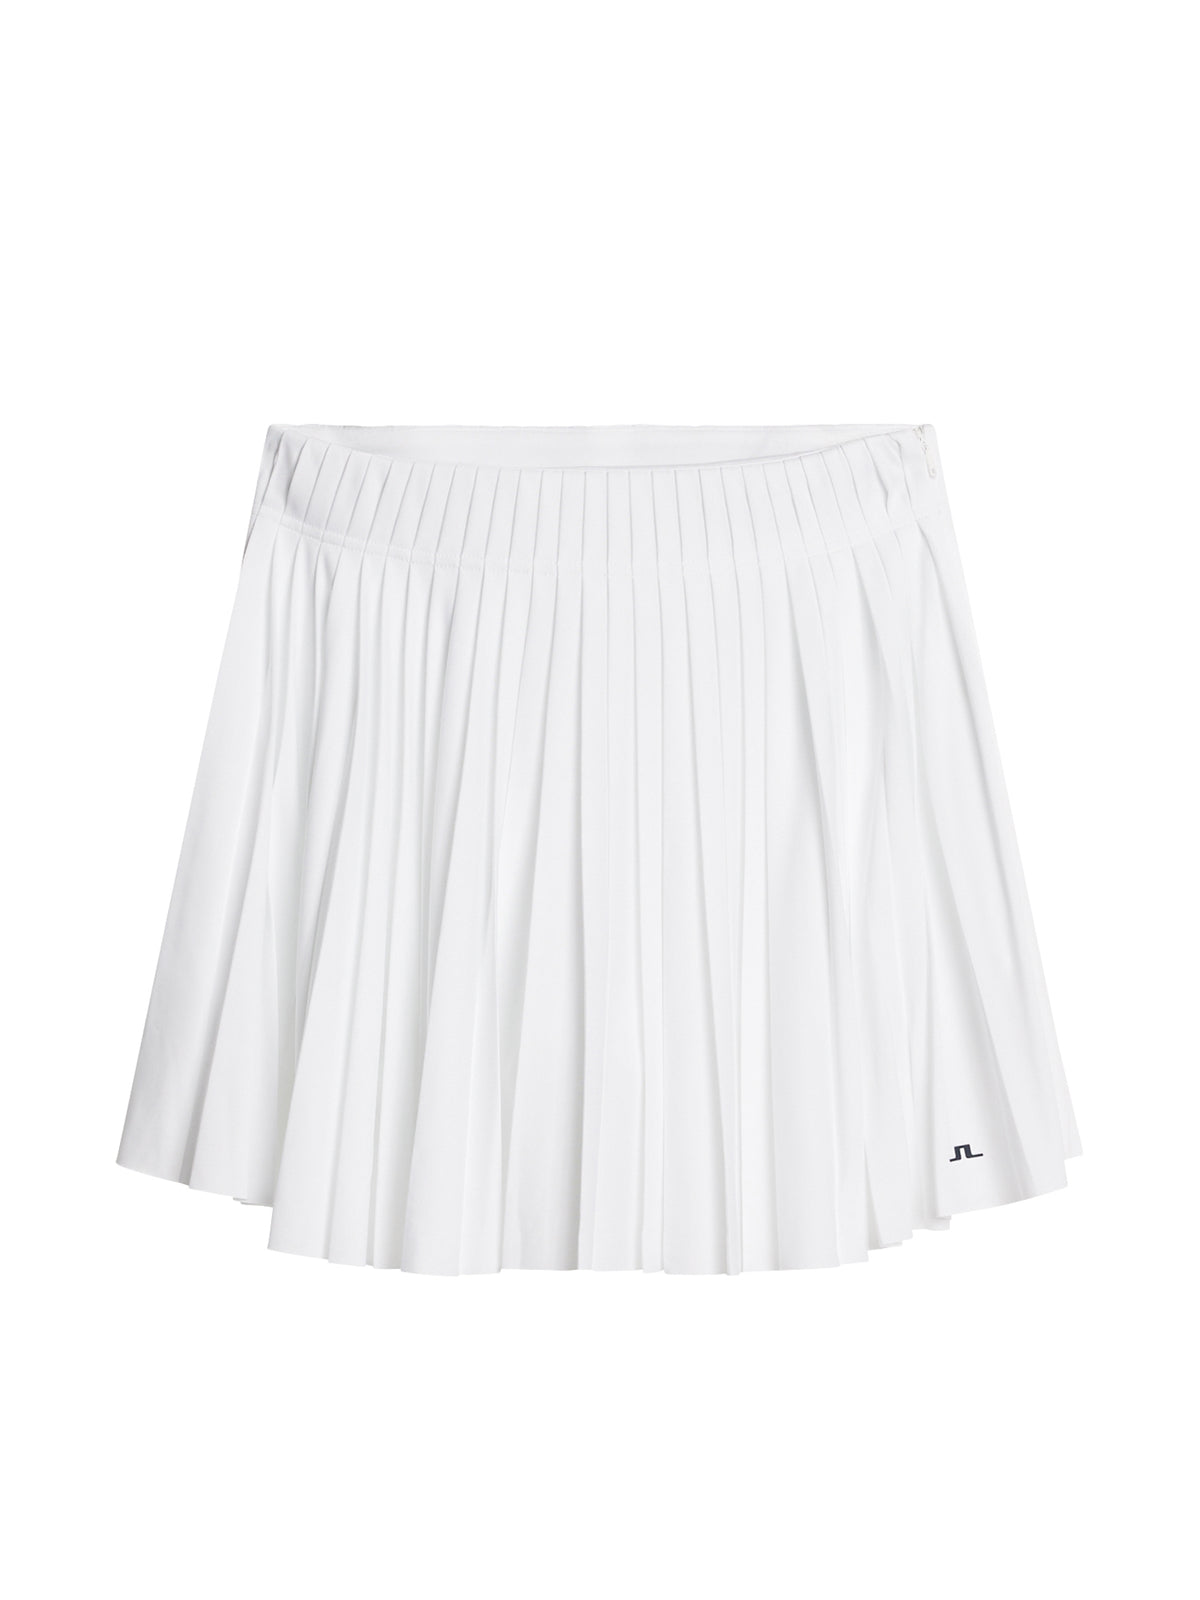 Gayle Skirt / White